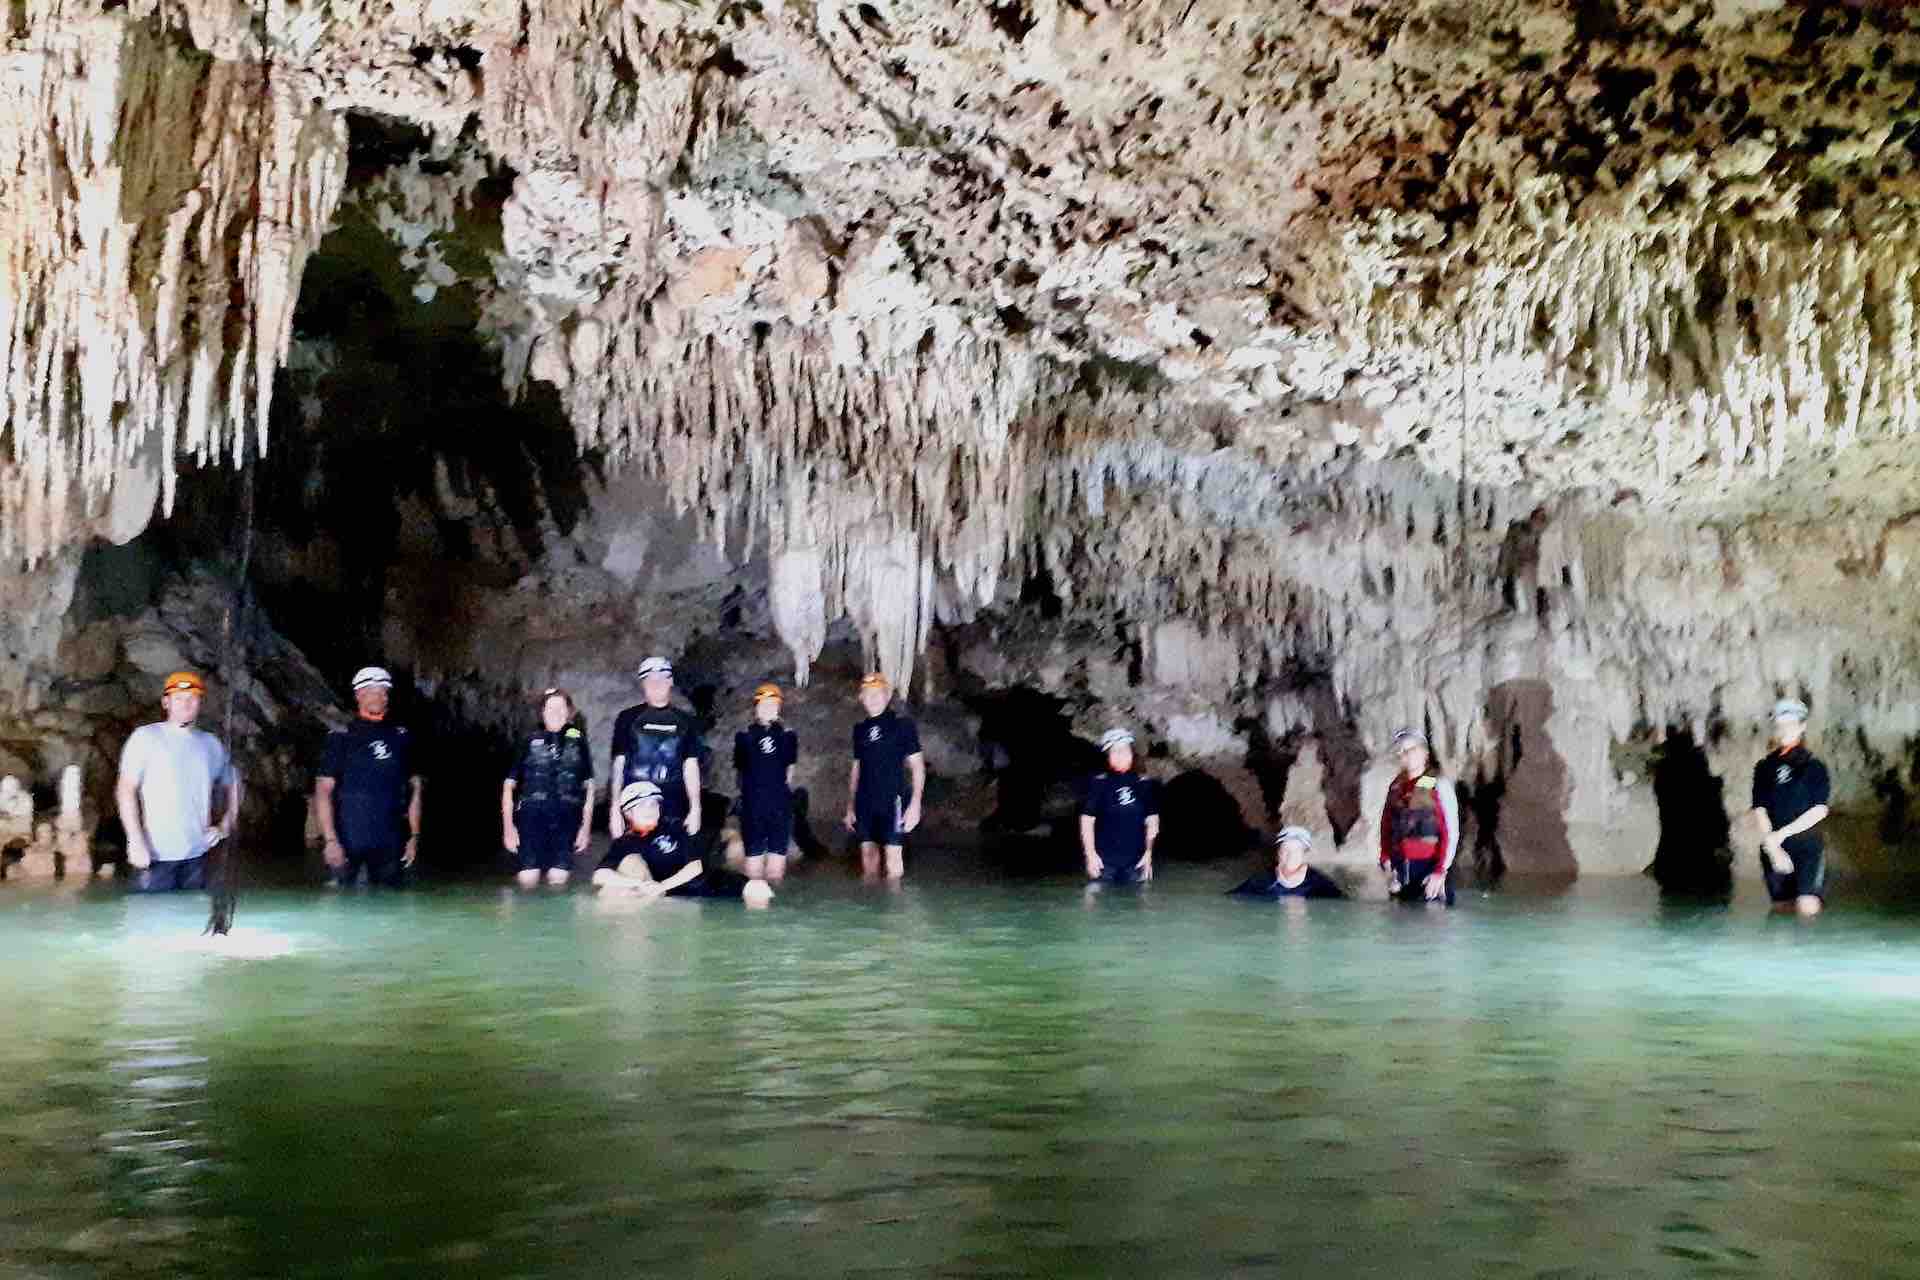 Mexico Cancun Tulum Playa del Carmen Riverta Maya Cenote Riviera Maya tour group